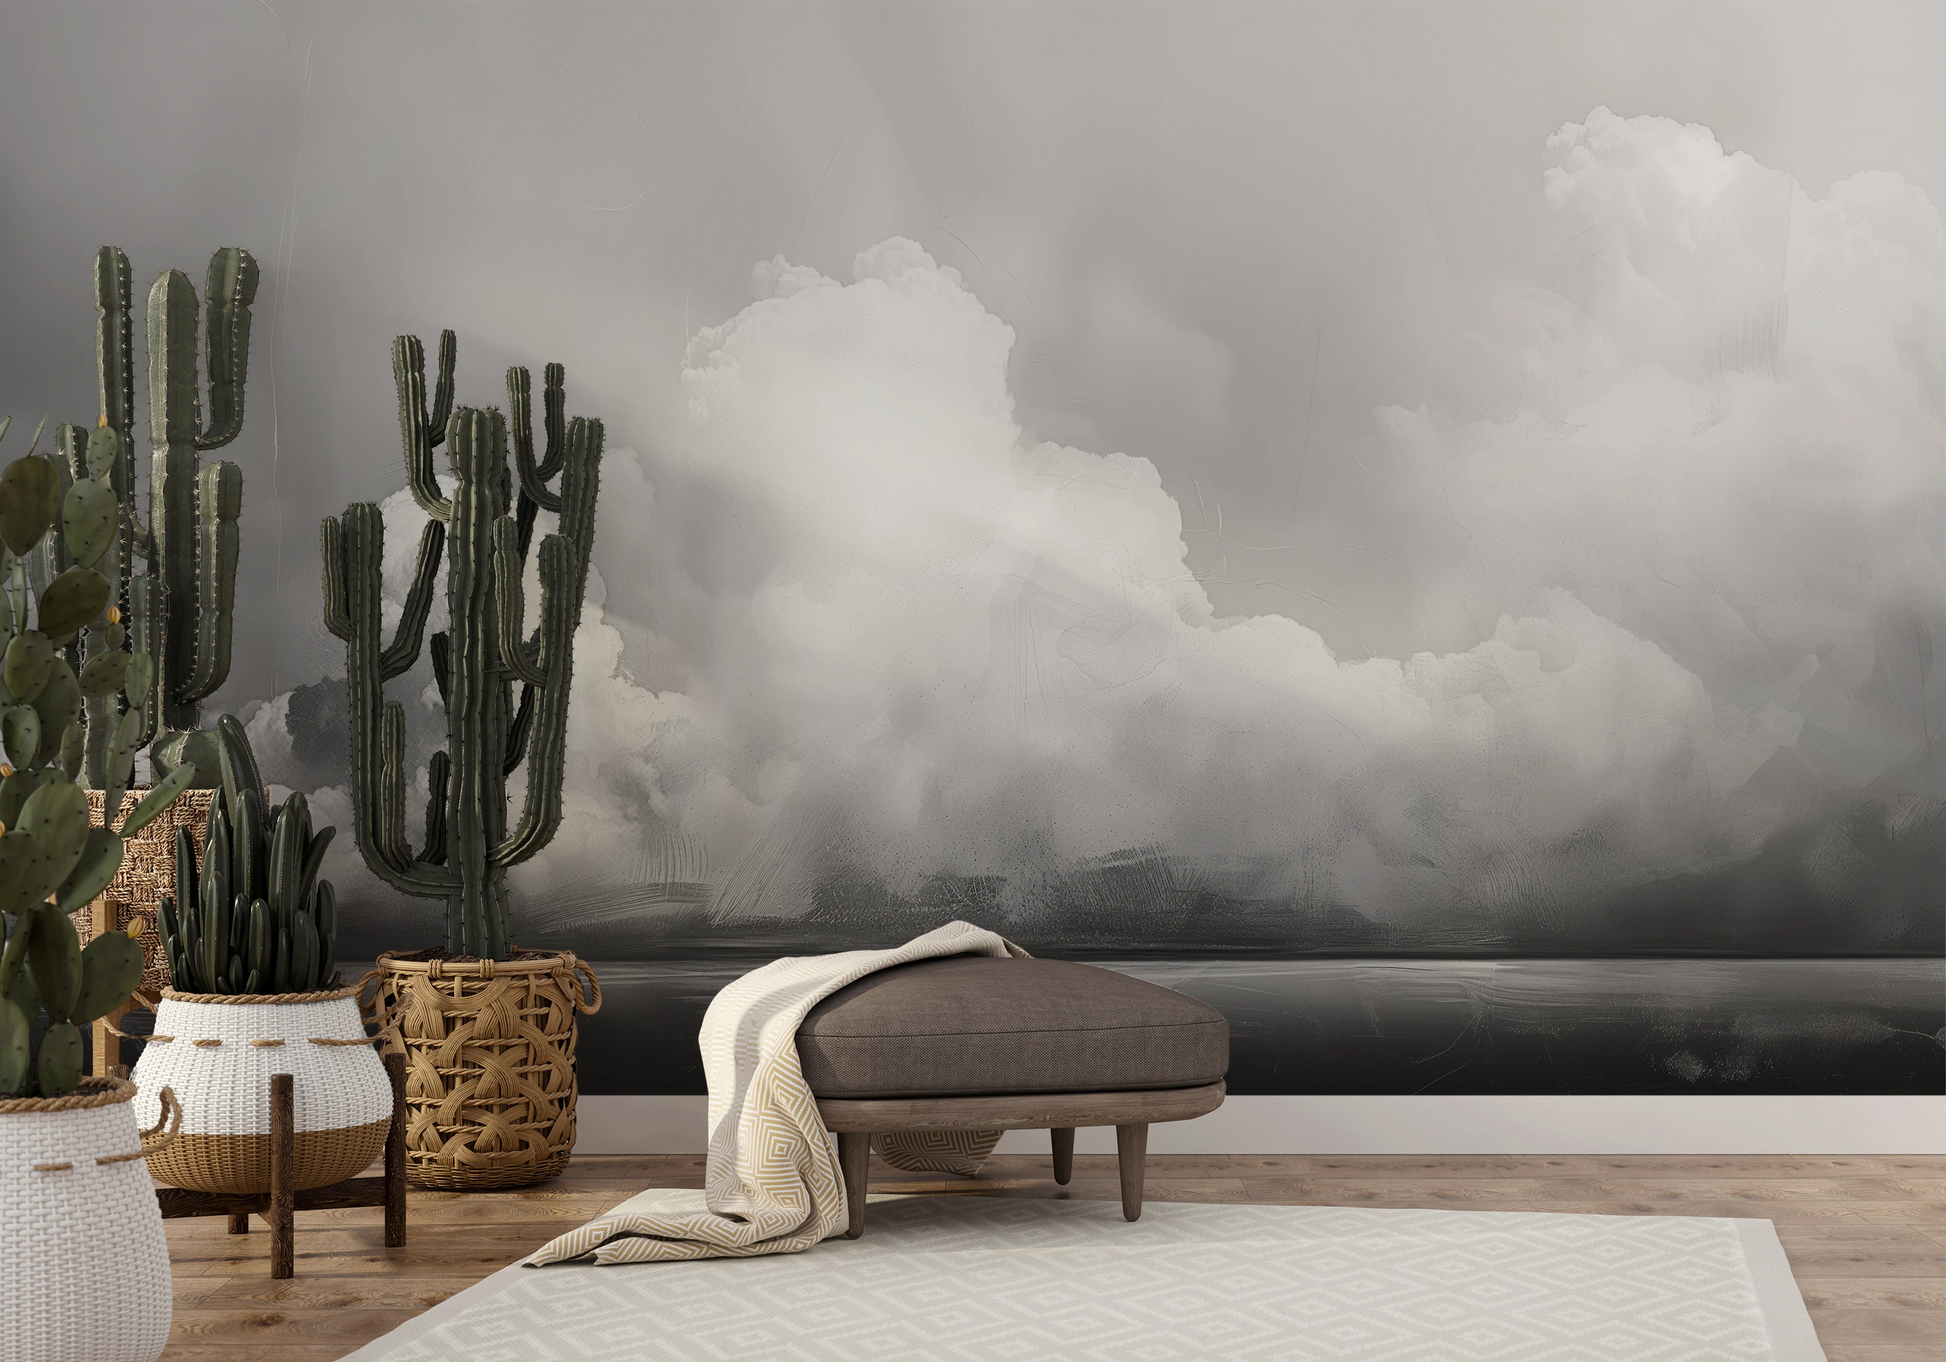 Fototapeta o nazwie Clouds of Tranquility użyta w aranzacji wnętrza.